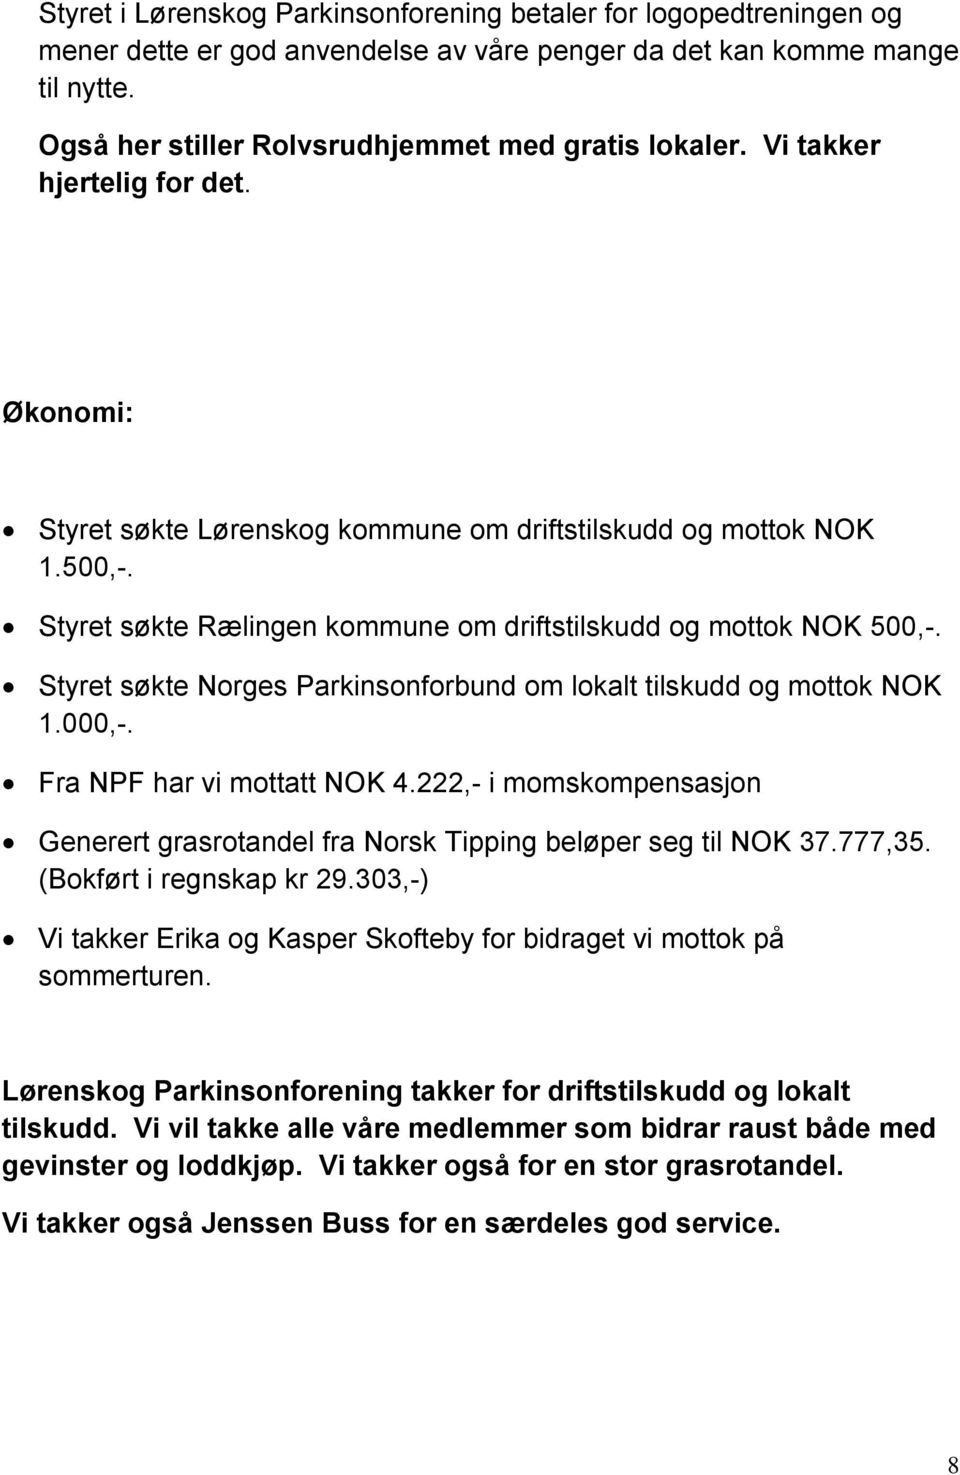 Styret søkte Norges Parkinsonforbund om lokalt tilskudd og mottok NOK 1.000,-. Fra NPF har vi mottatt NOK 4.222,- i momskompensasjon Generert grasrotandel fra Norsk Tipping beløper seg til NOK 37.